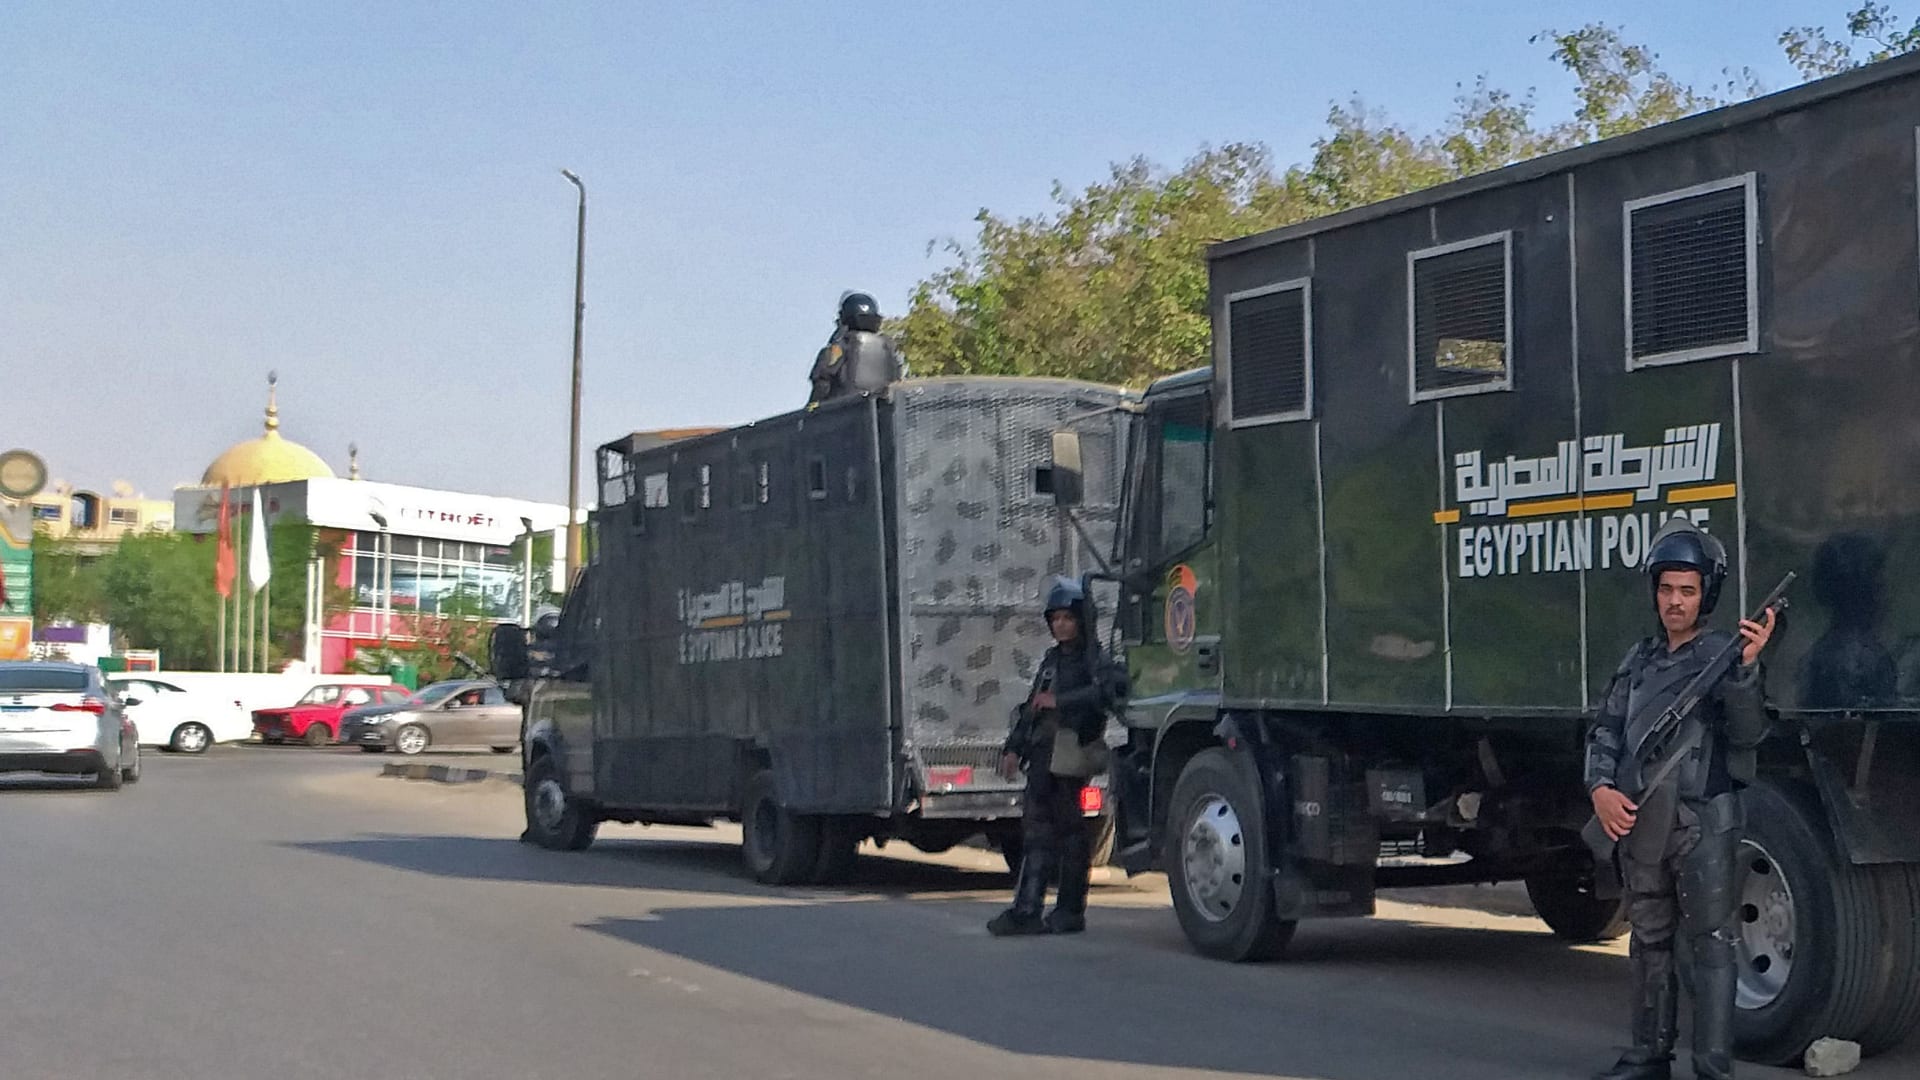 شرطة مكافحة الشغب المصرية في العاصمة المصرية القاهرة في 27 سبتمبر 2019.